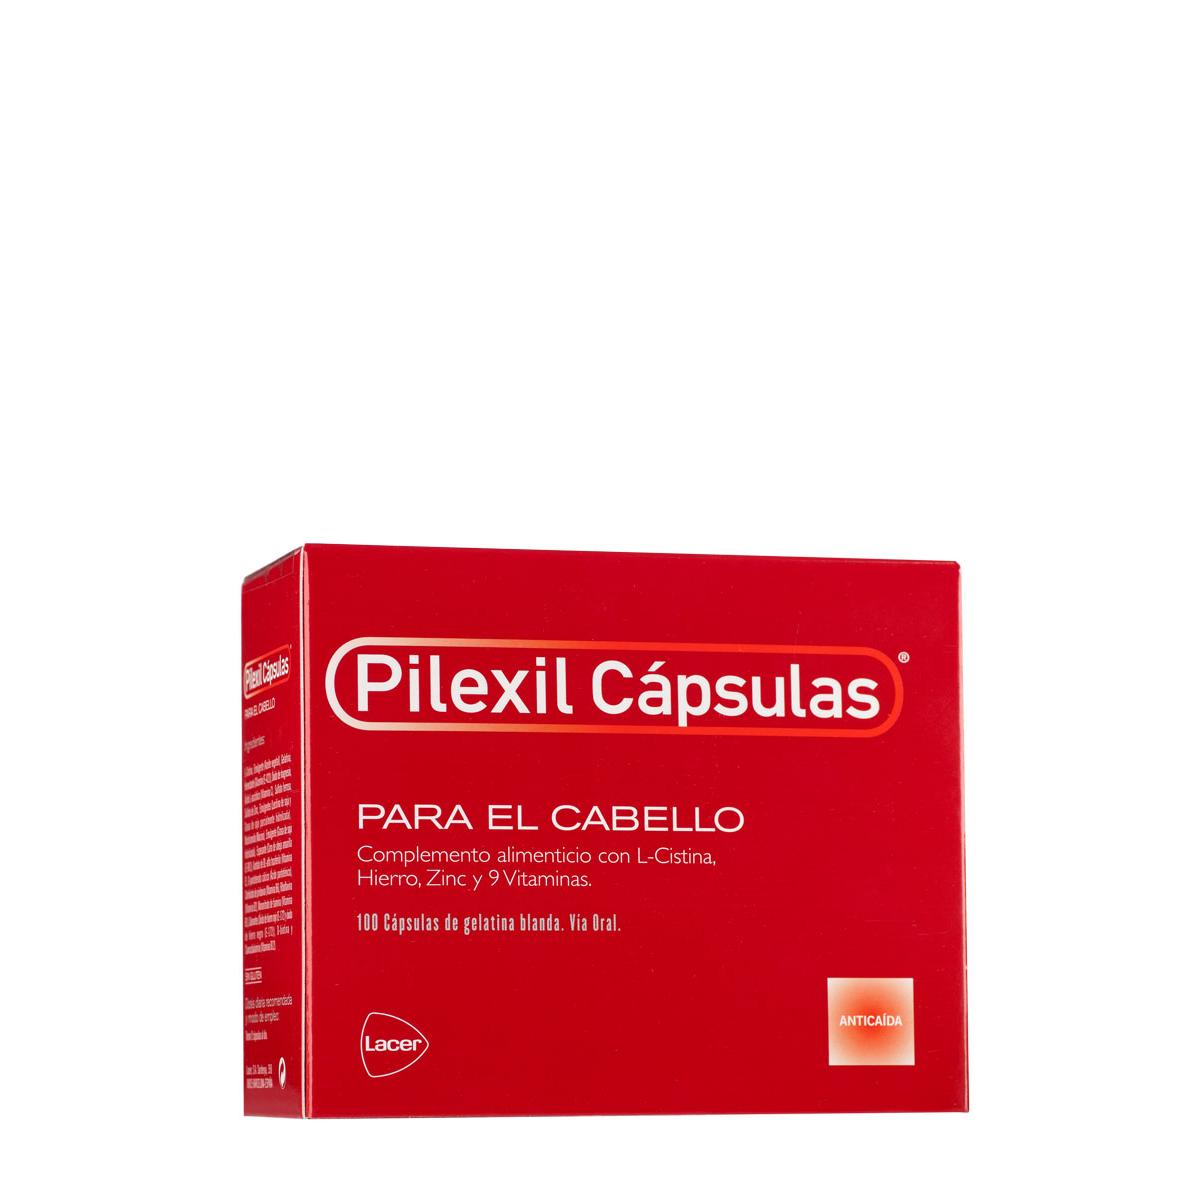 Pilexil - Pilexil capsulas cabello 100 cápsulas